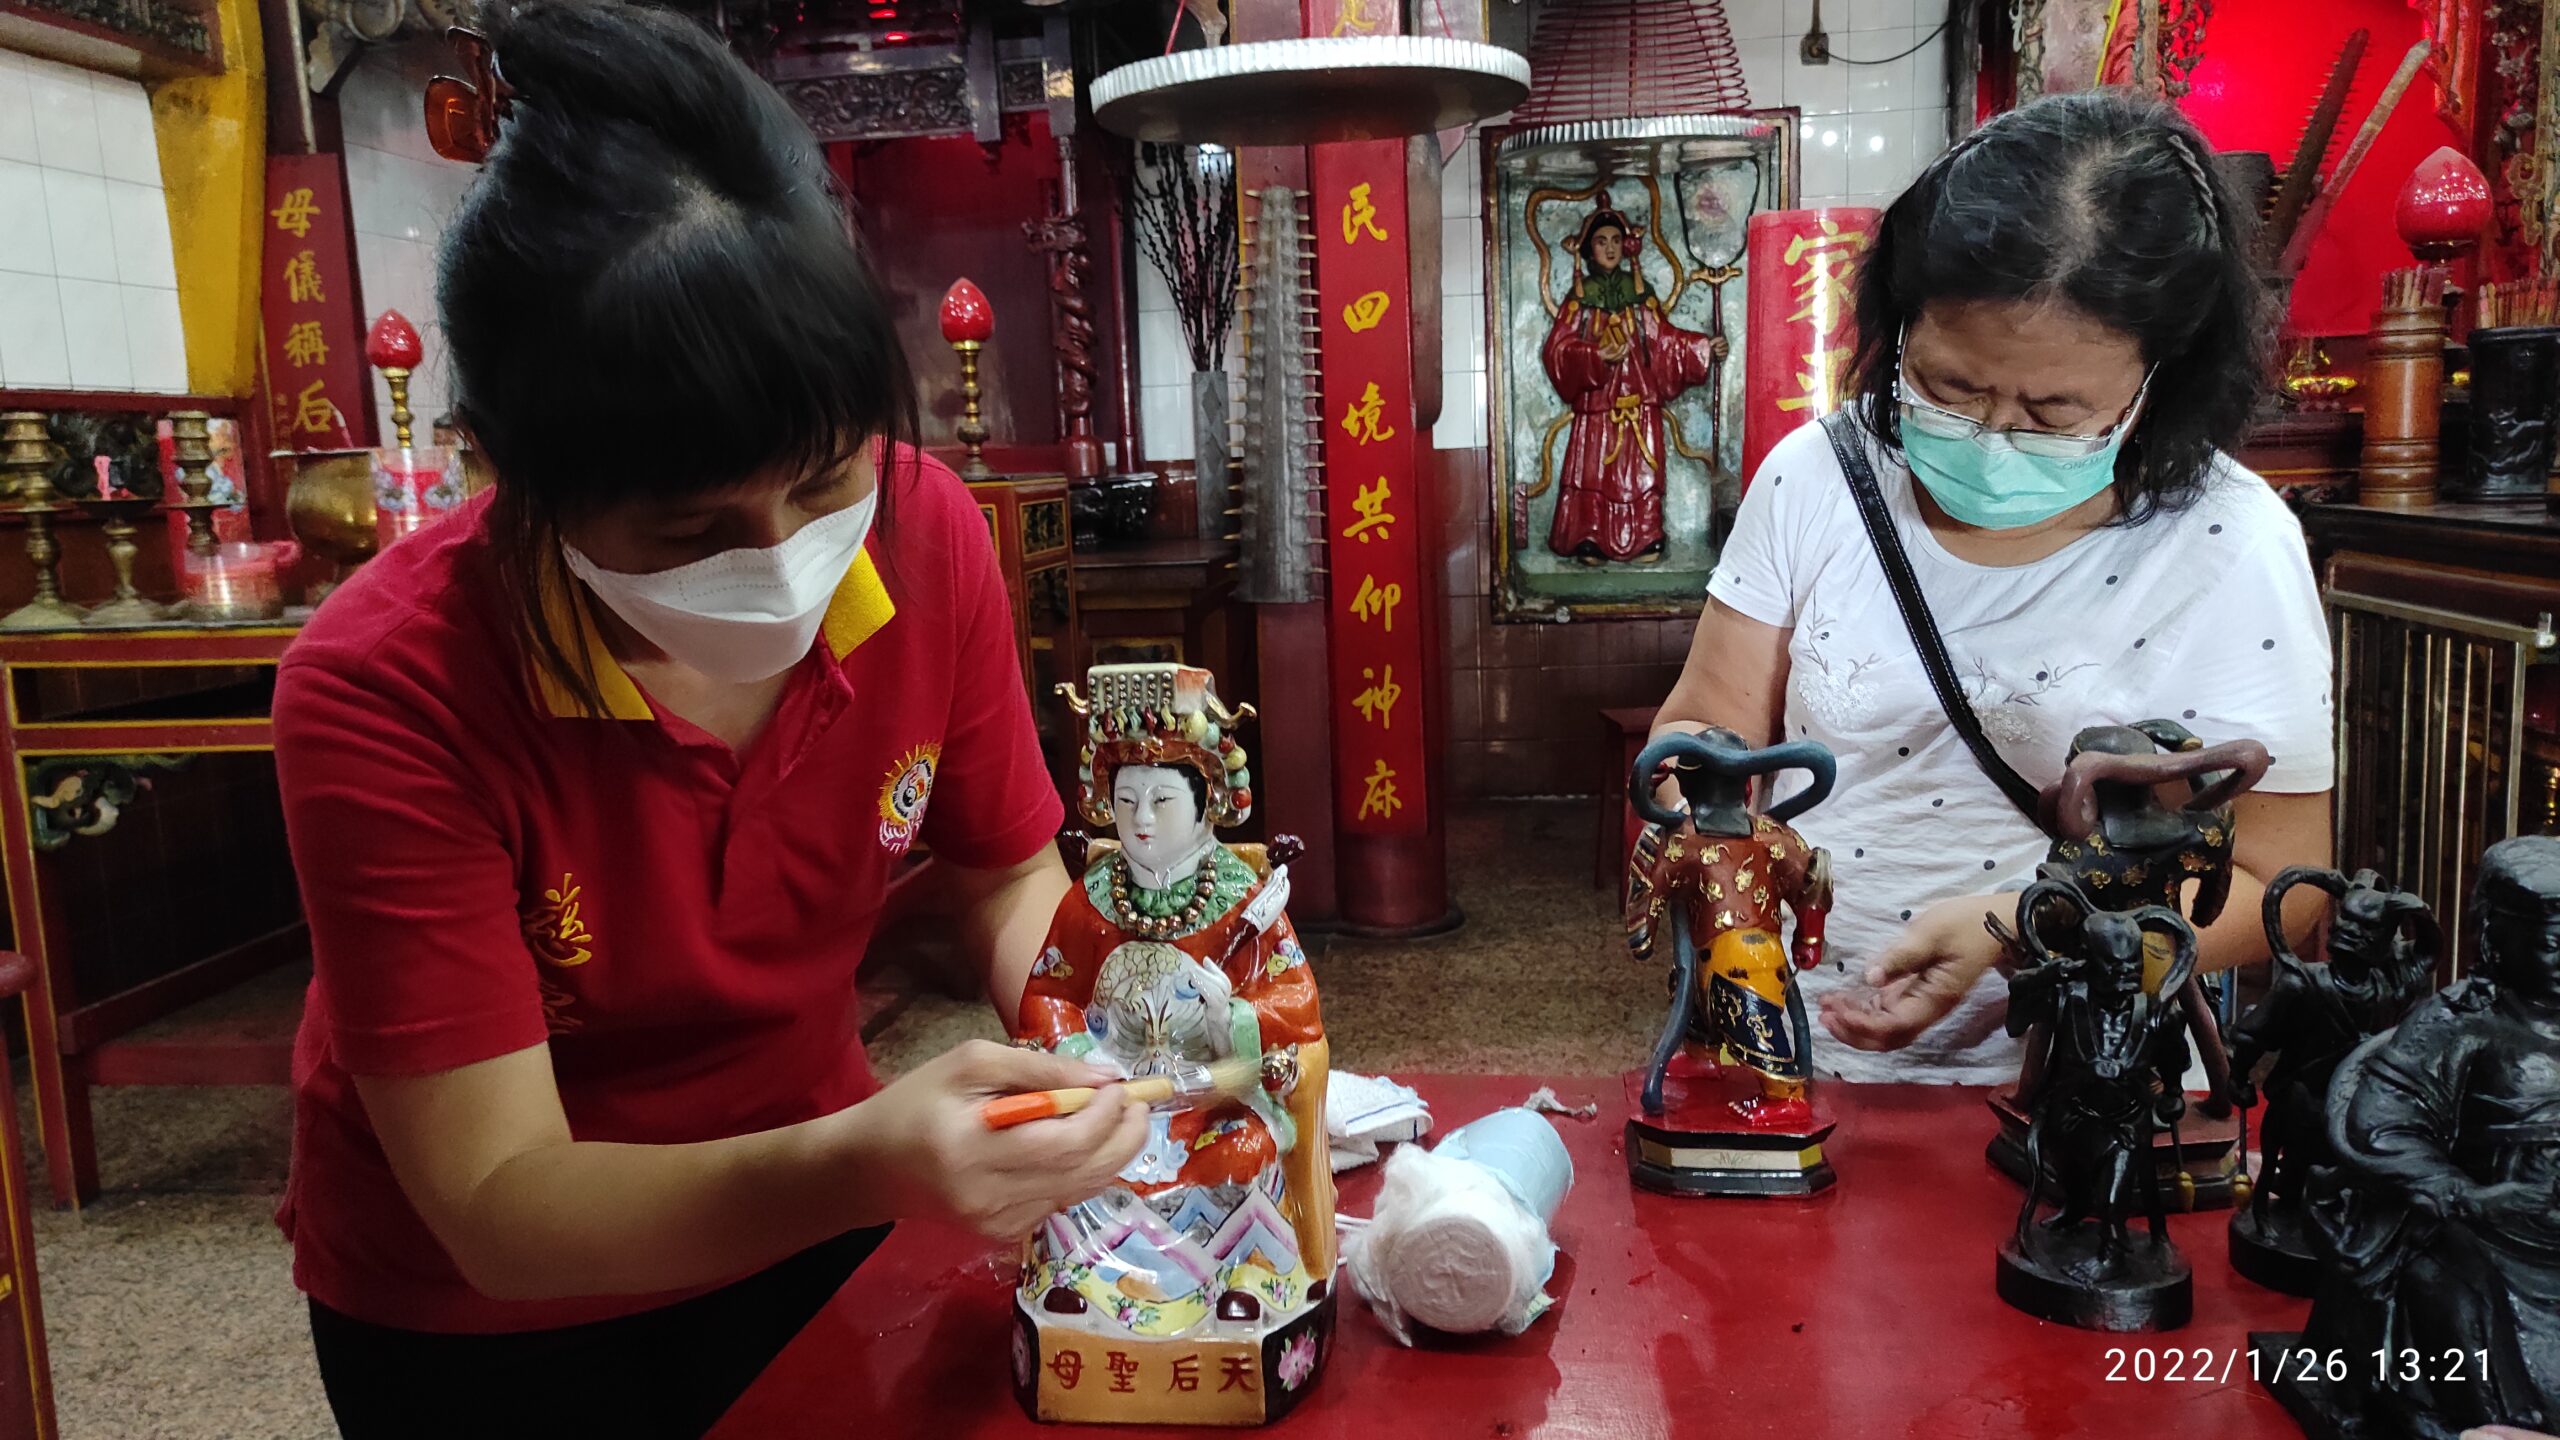 Jelang Perayaan Imlek, Ini Harapan Umat Tionghoa di Kota Kediri